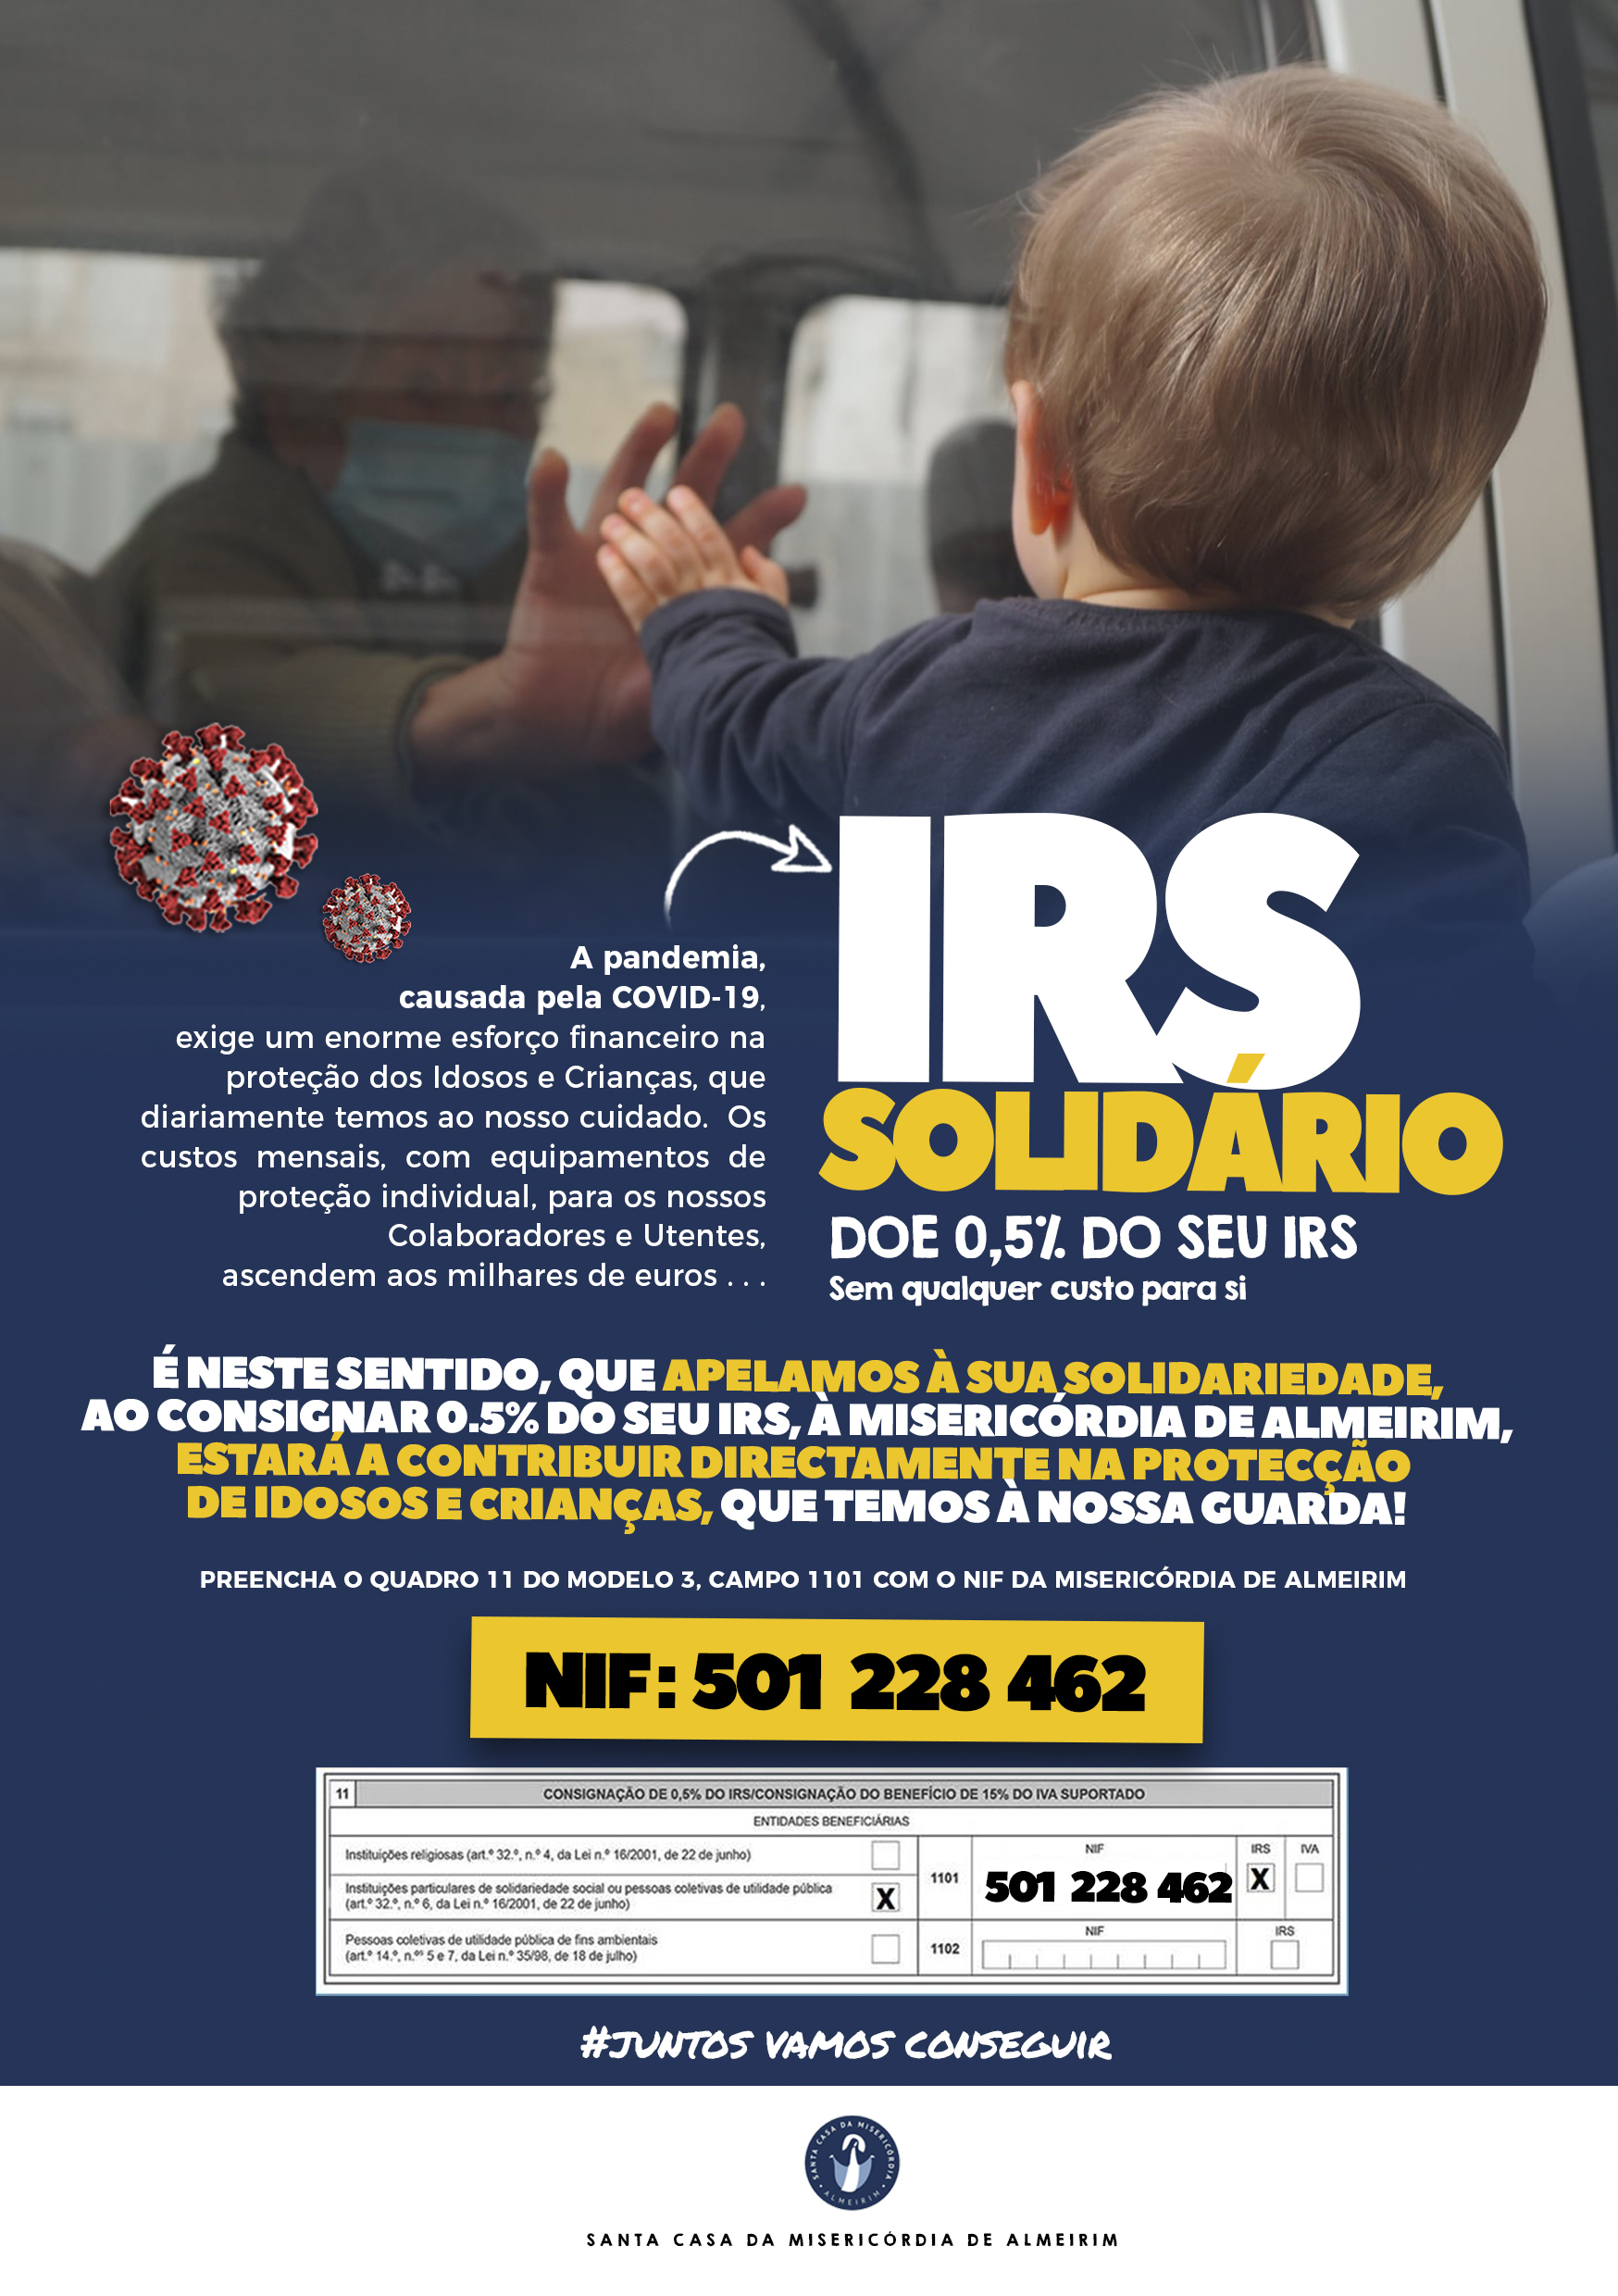 Consignação do IRS